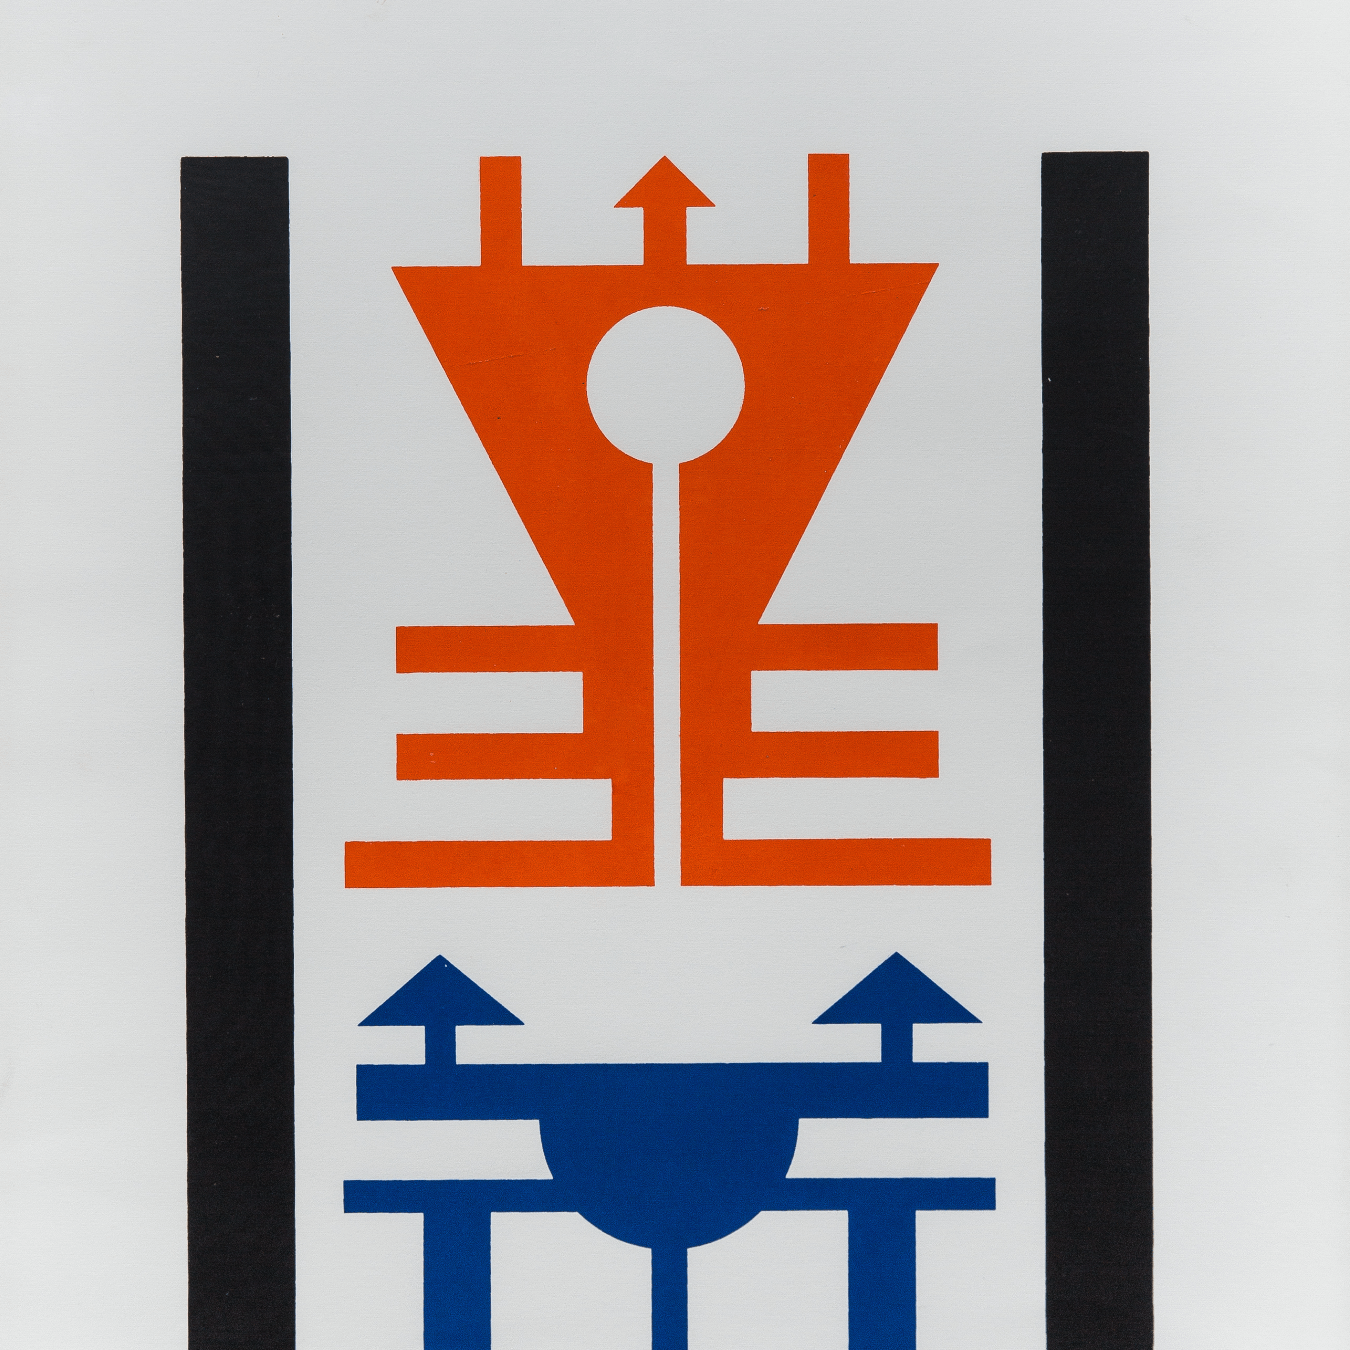 Serigrafia "Emblema Serigráfico" de Rubem Valentim de 1974